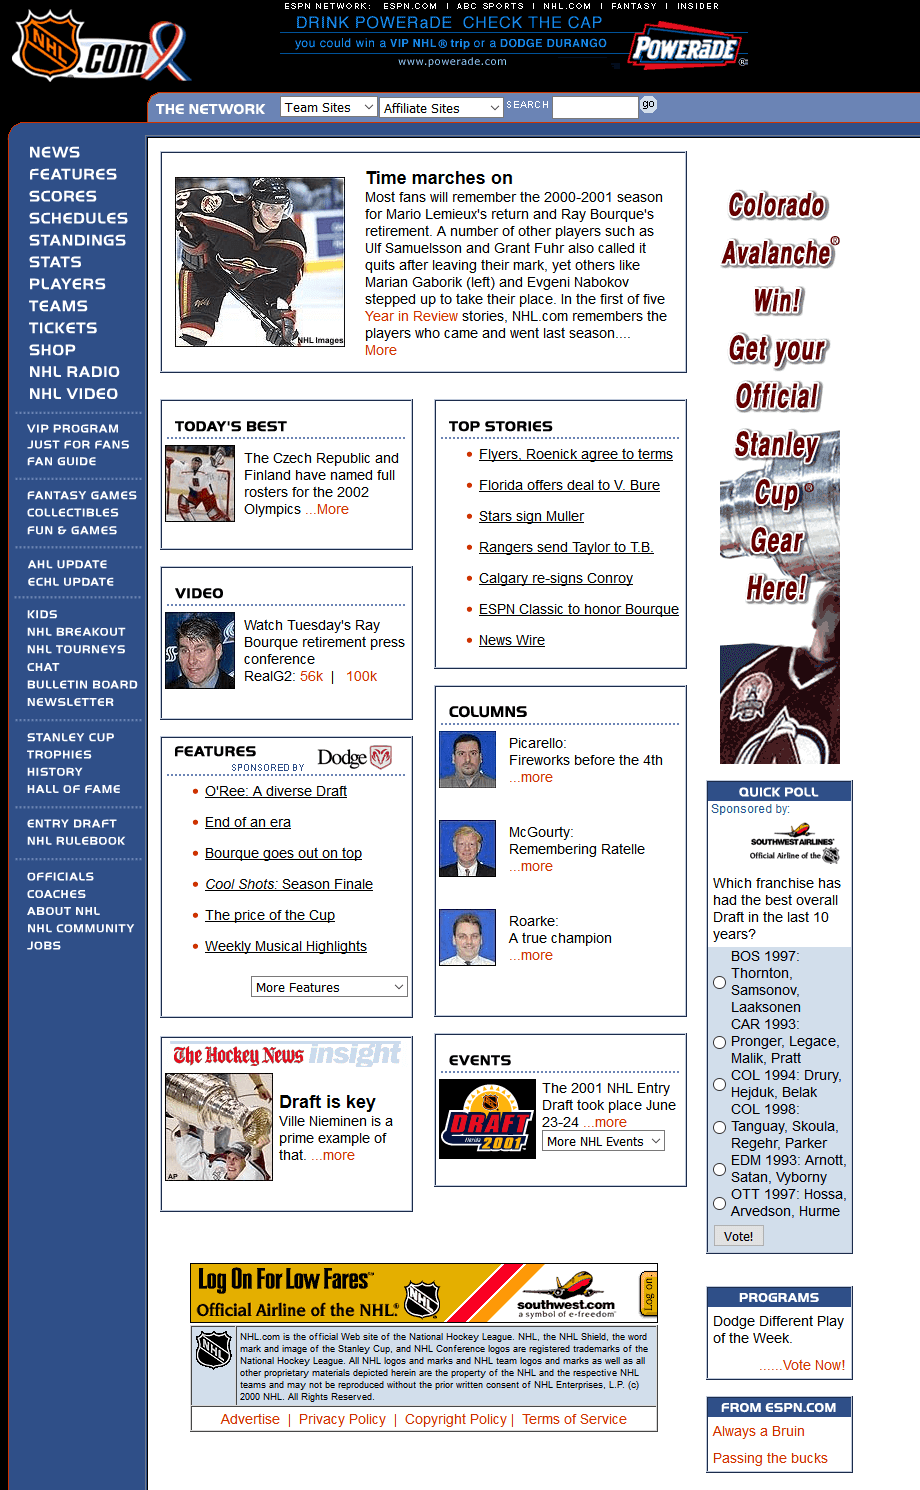 NHL.com in 2001